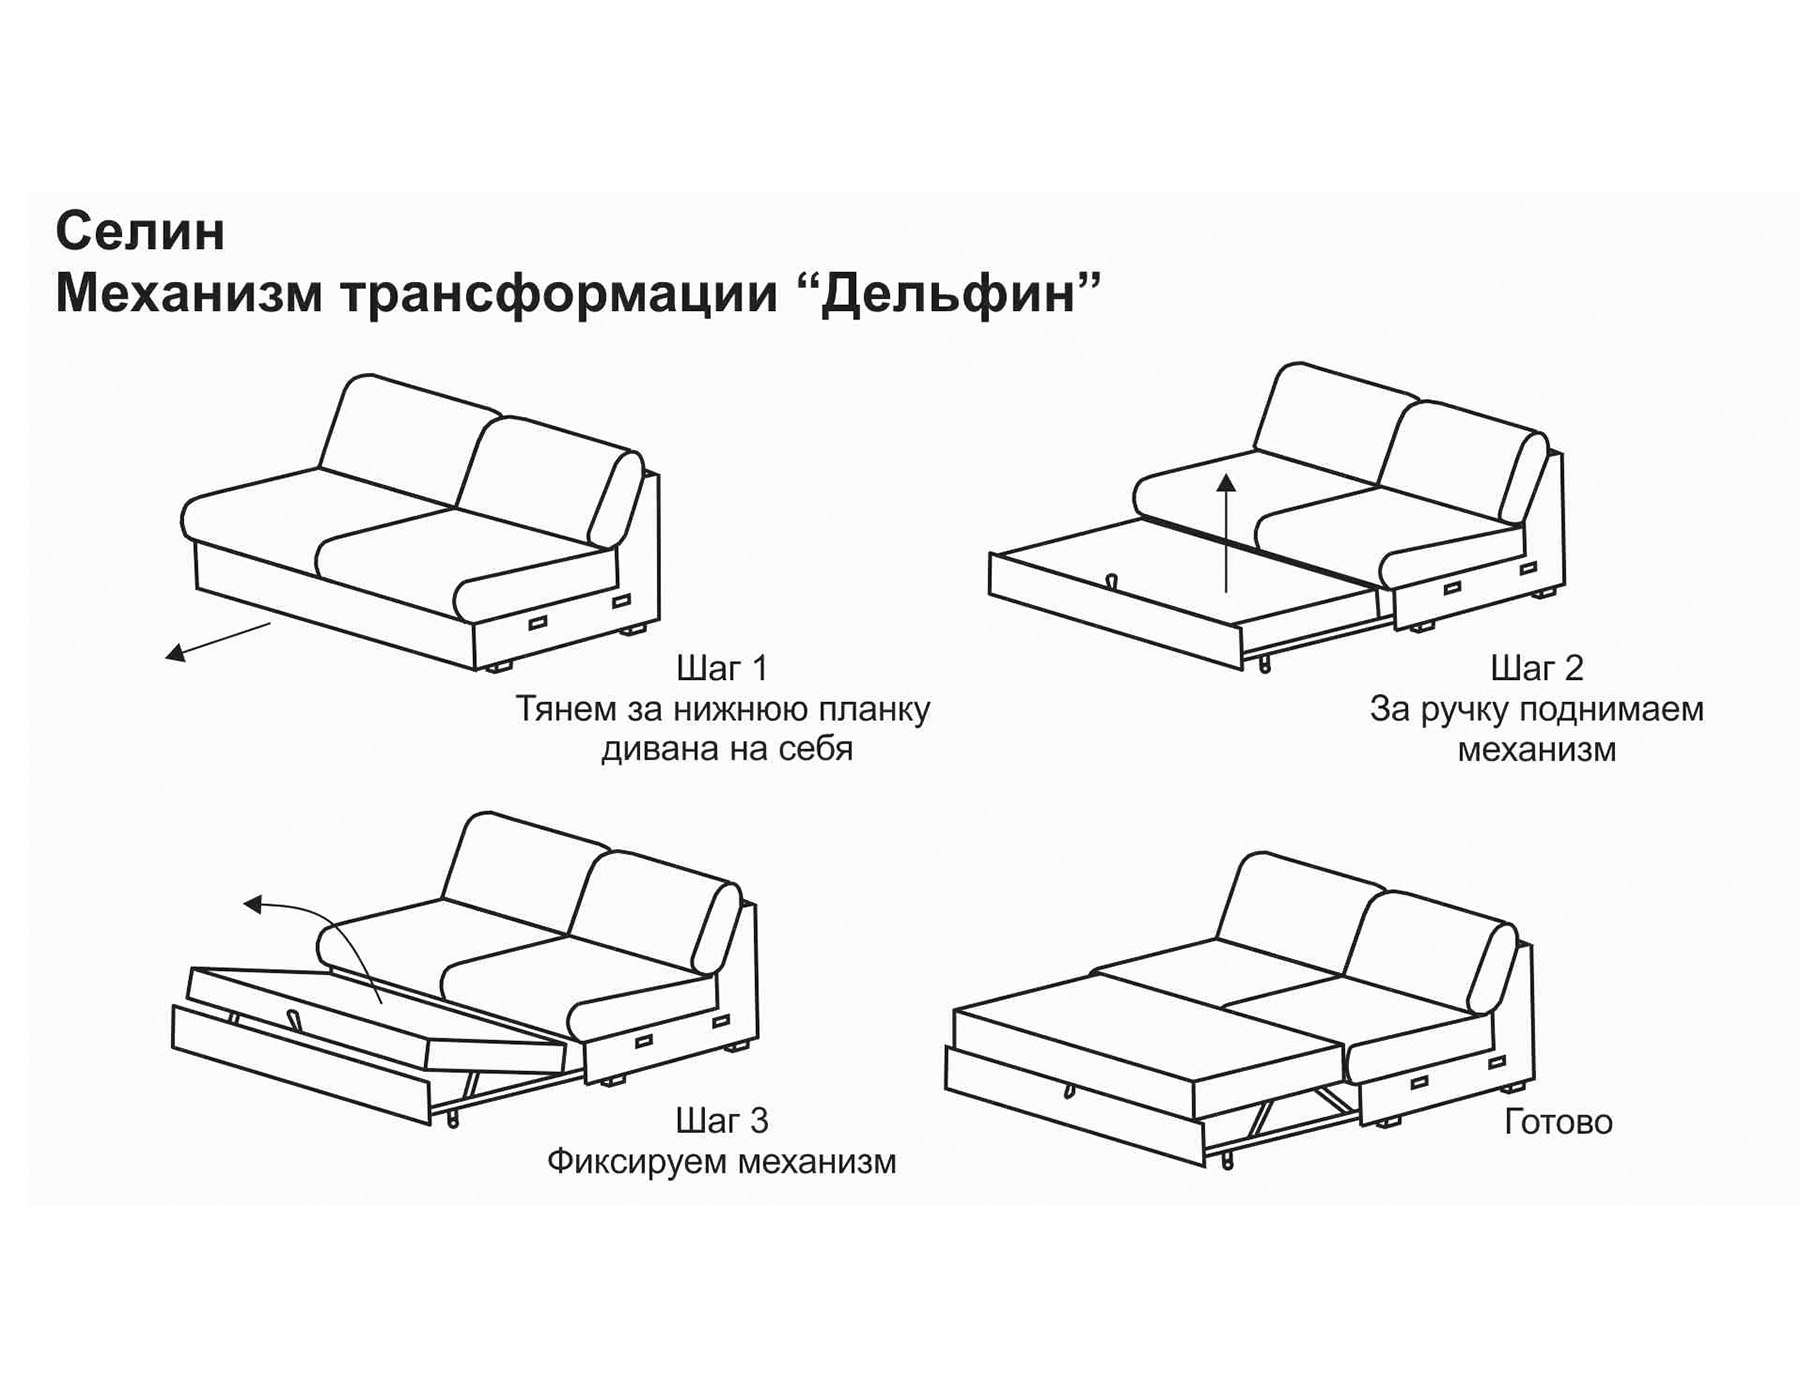 типы раздвижных систем диванов